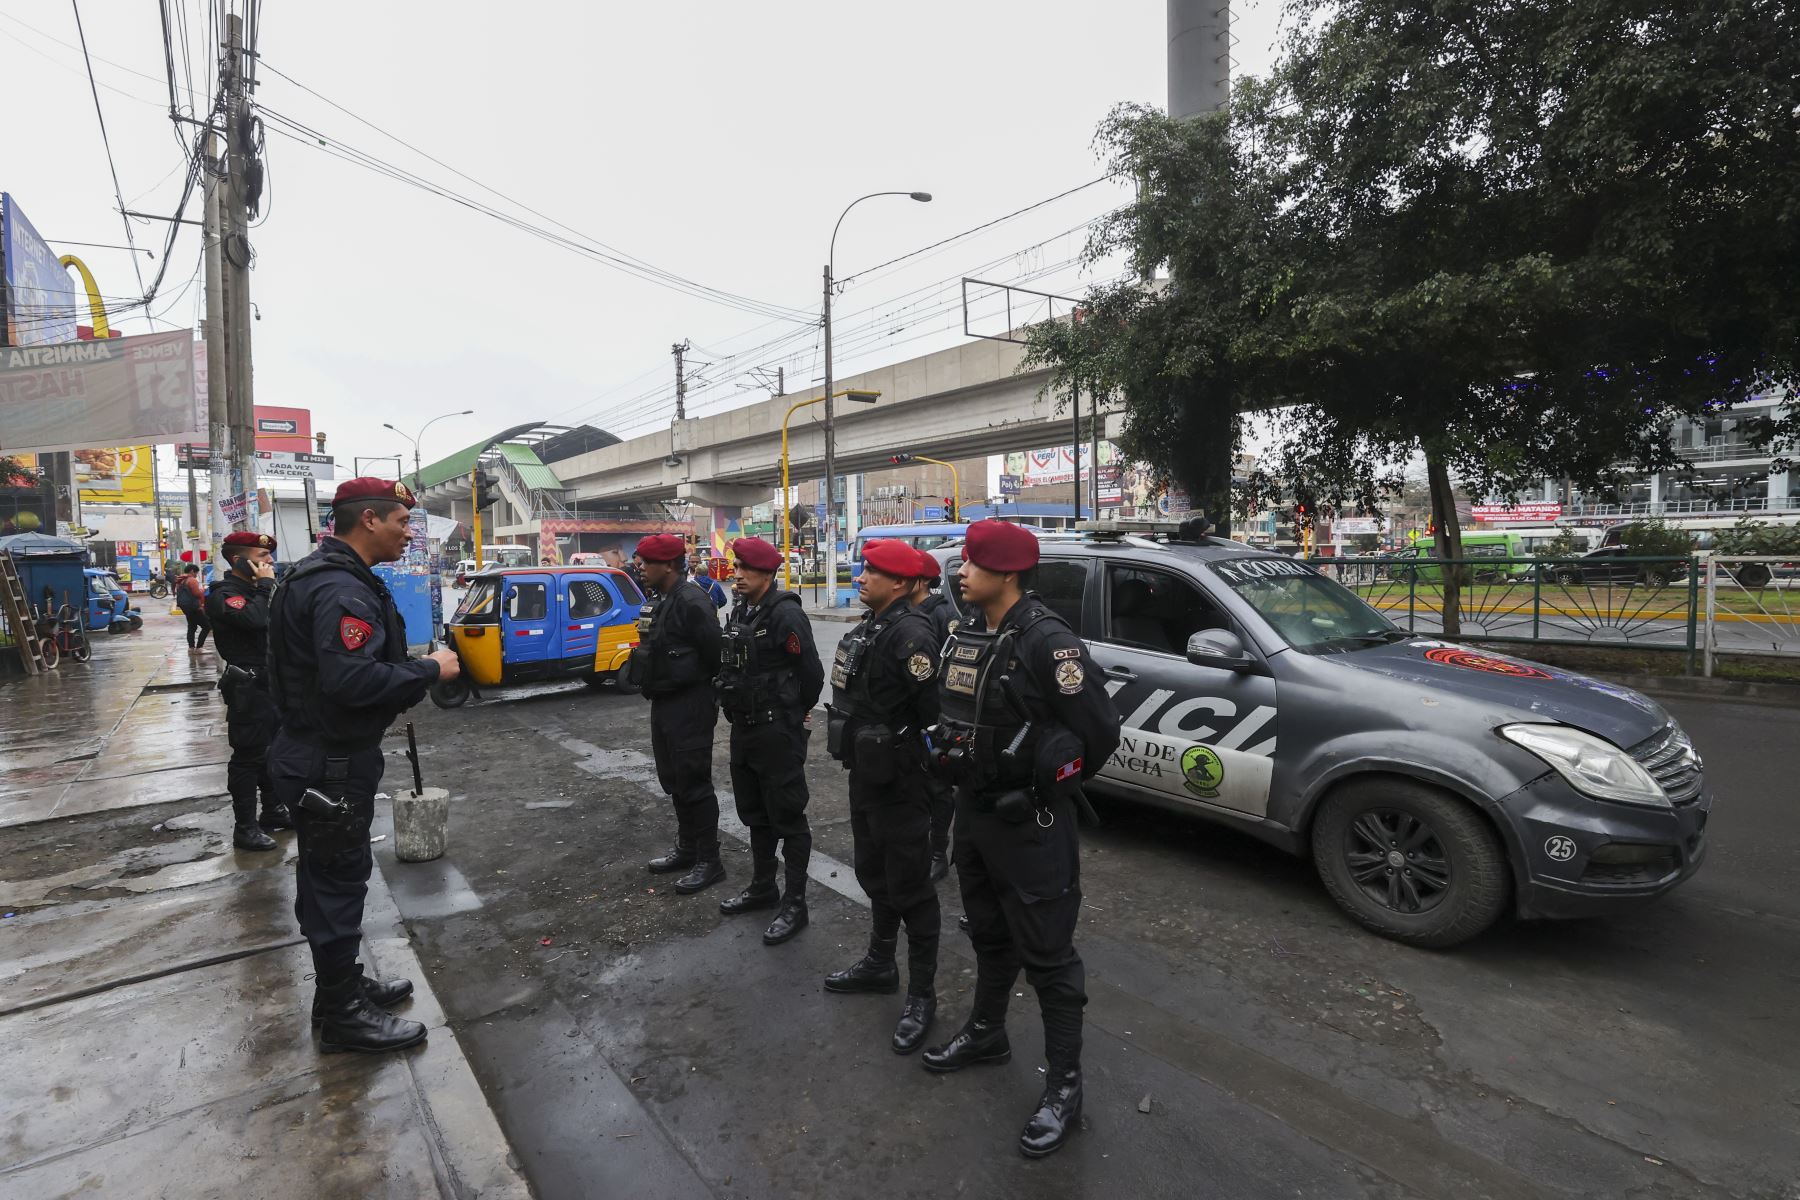 La Policía Nacional del Perú (PNP) coordinará con las Fuerzas Armadas y otras instituciones para que presten su colaboración, en el marco de sus competencias, con la finalidad de ejercer el control territorial en los distritos mencionados. Foto: ANDINA/ Juan Carlos Guzmán